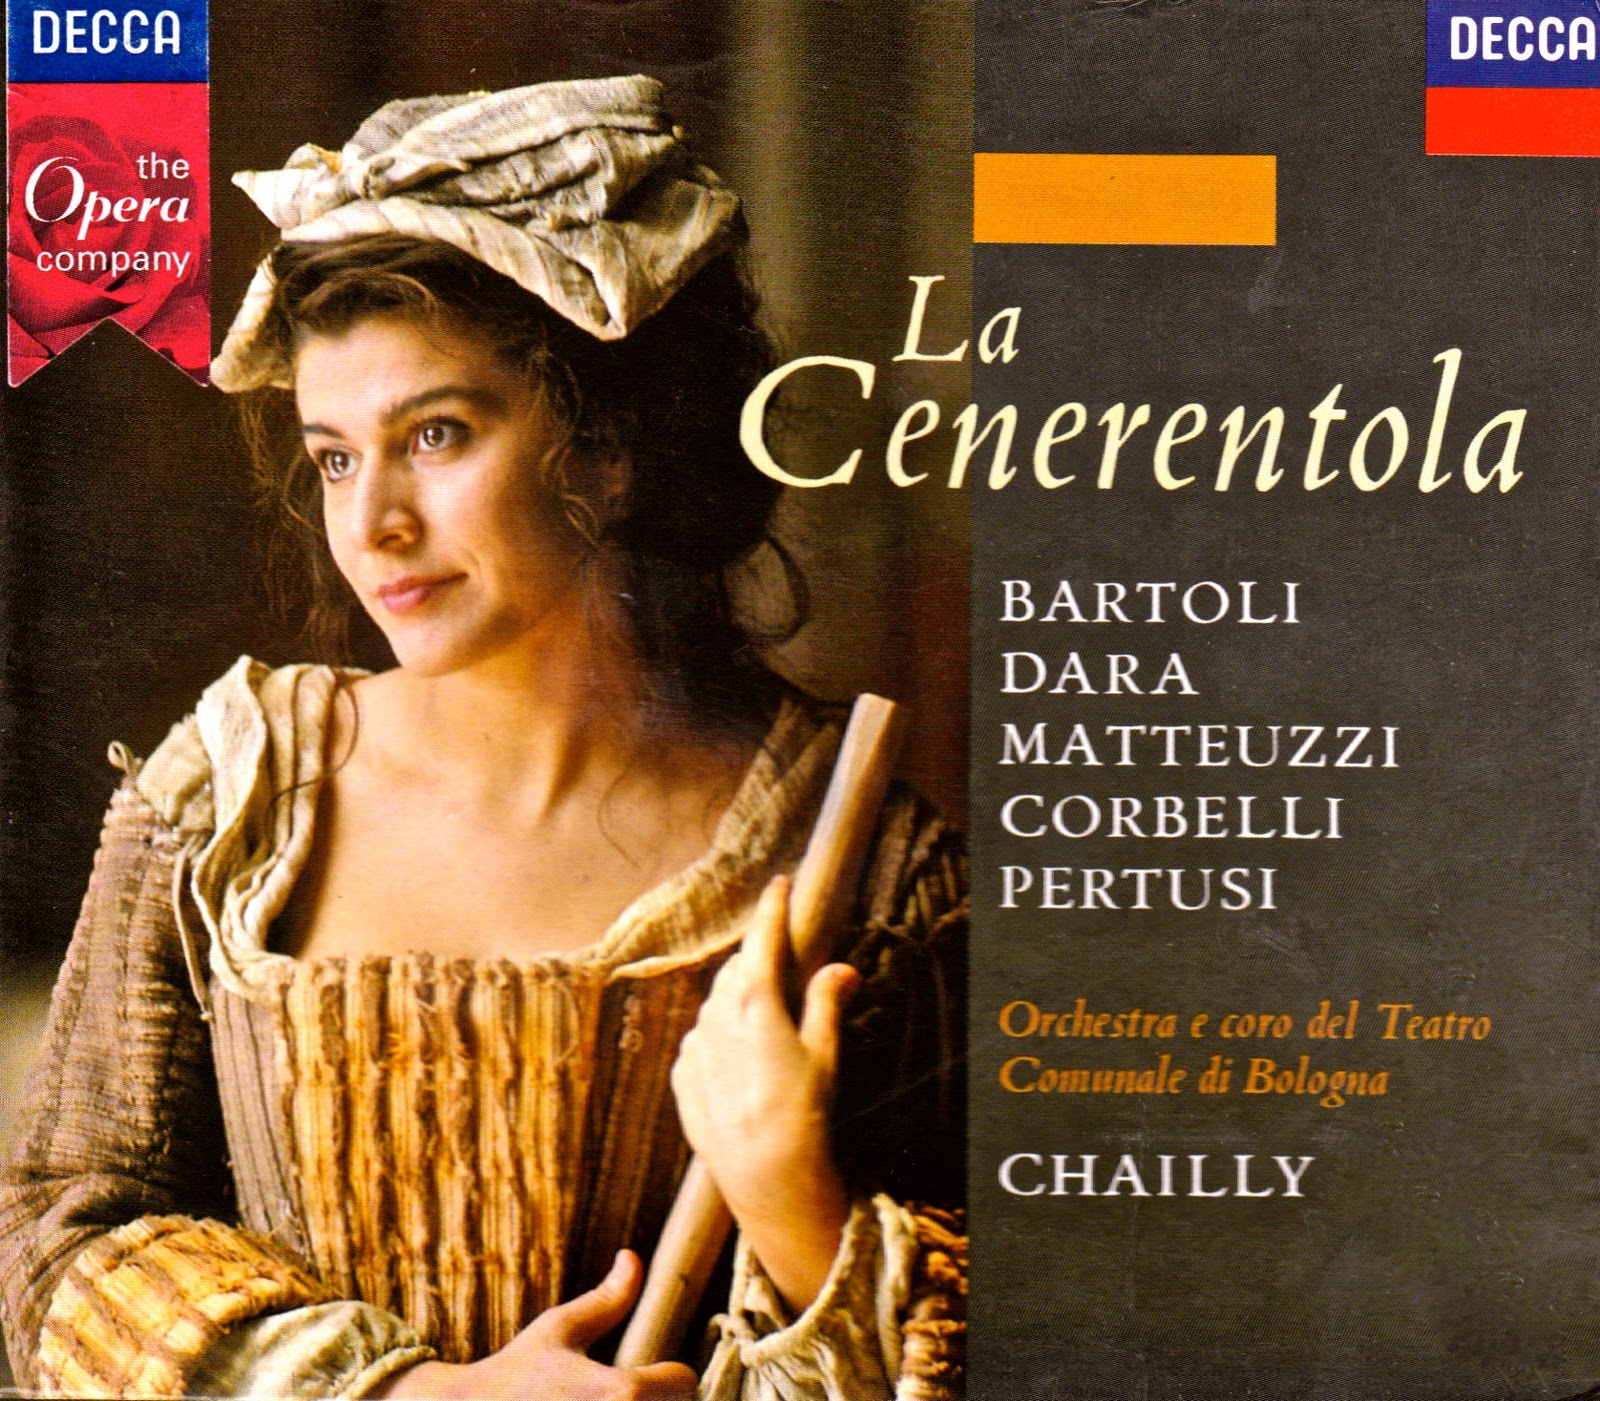 Rossini - La Cenicienta[Opera][Dvdrip]